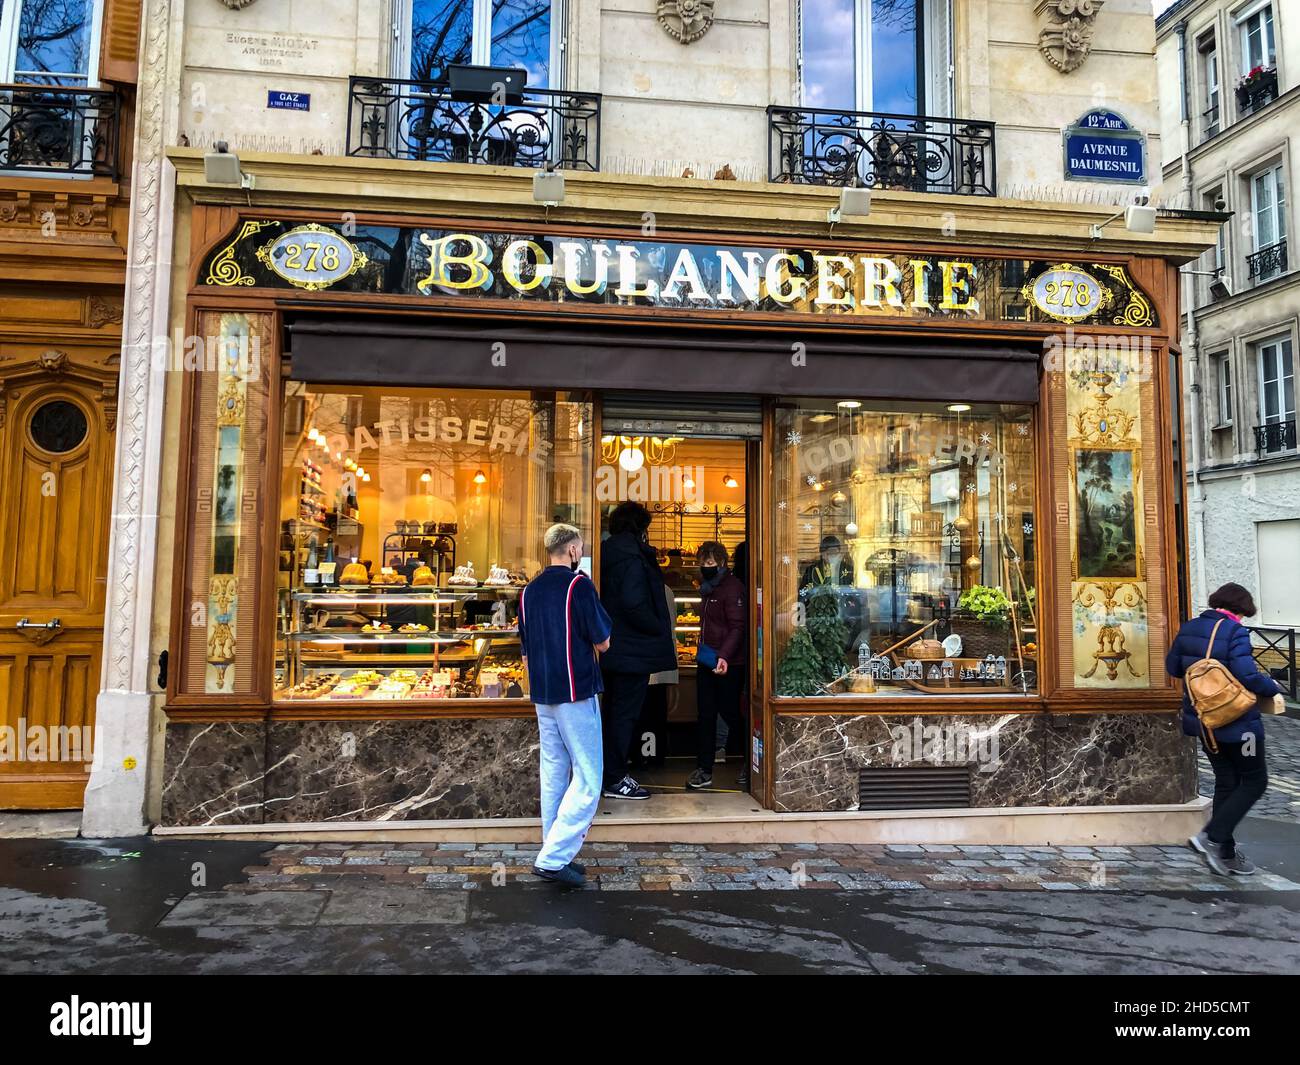 Paris, France, Shop Front, personnes en attente devant Old French Bread Bakery, boulangerie Patisserie Store Sign, rue, magasin de boulangerie rétro, quartier de paris Banque D'Images